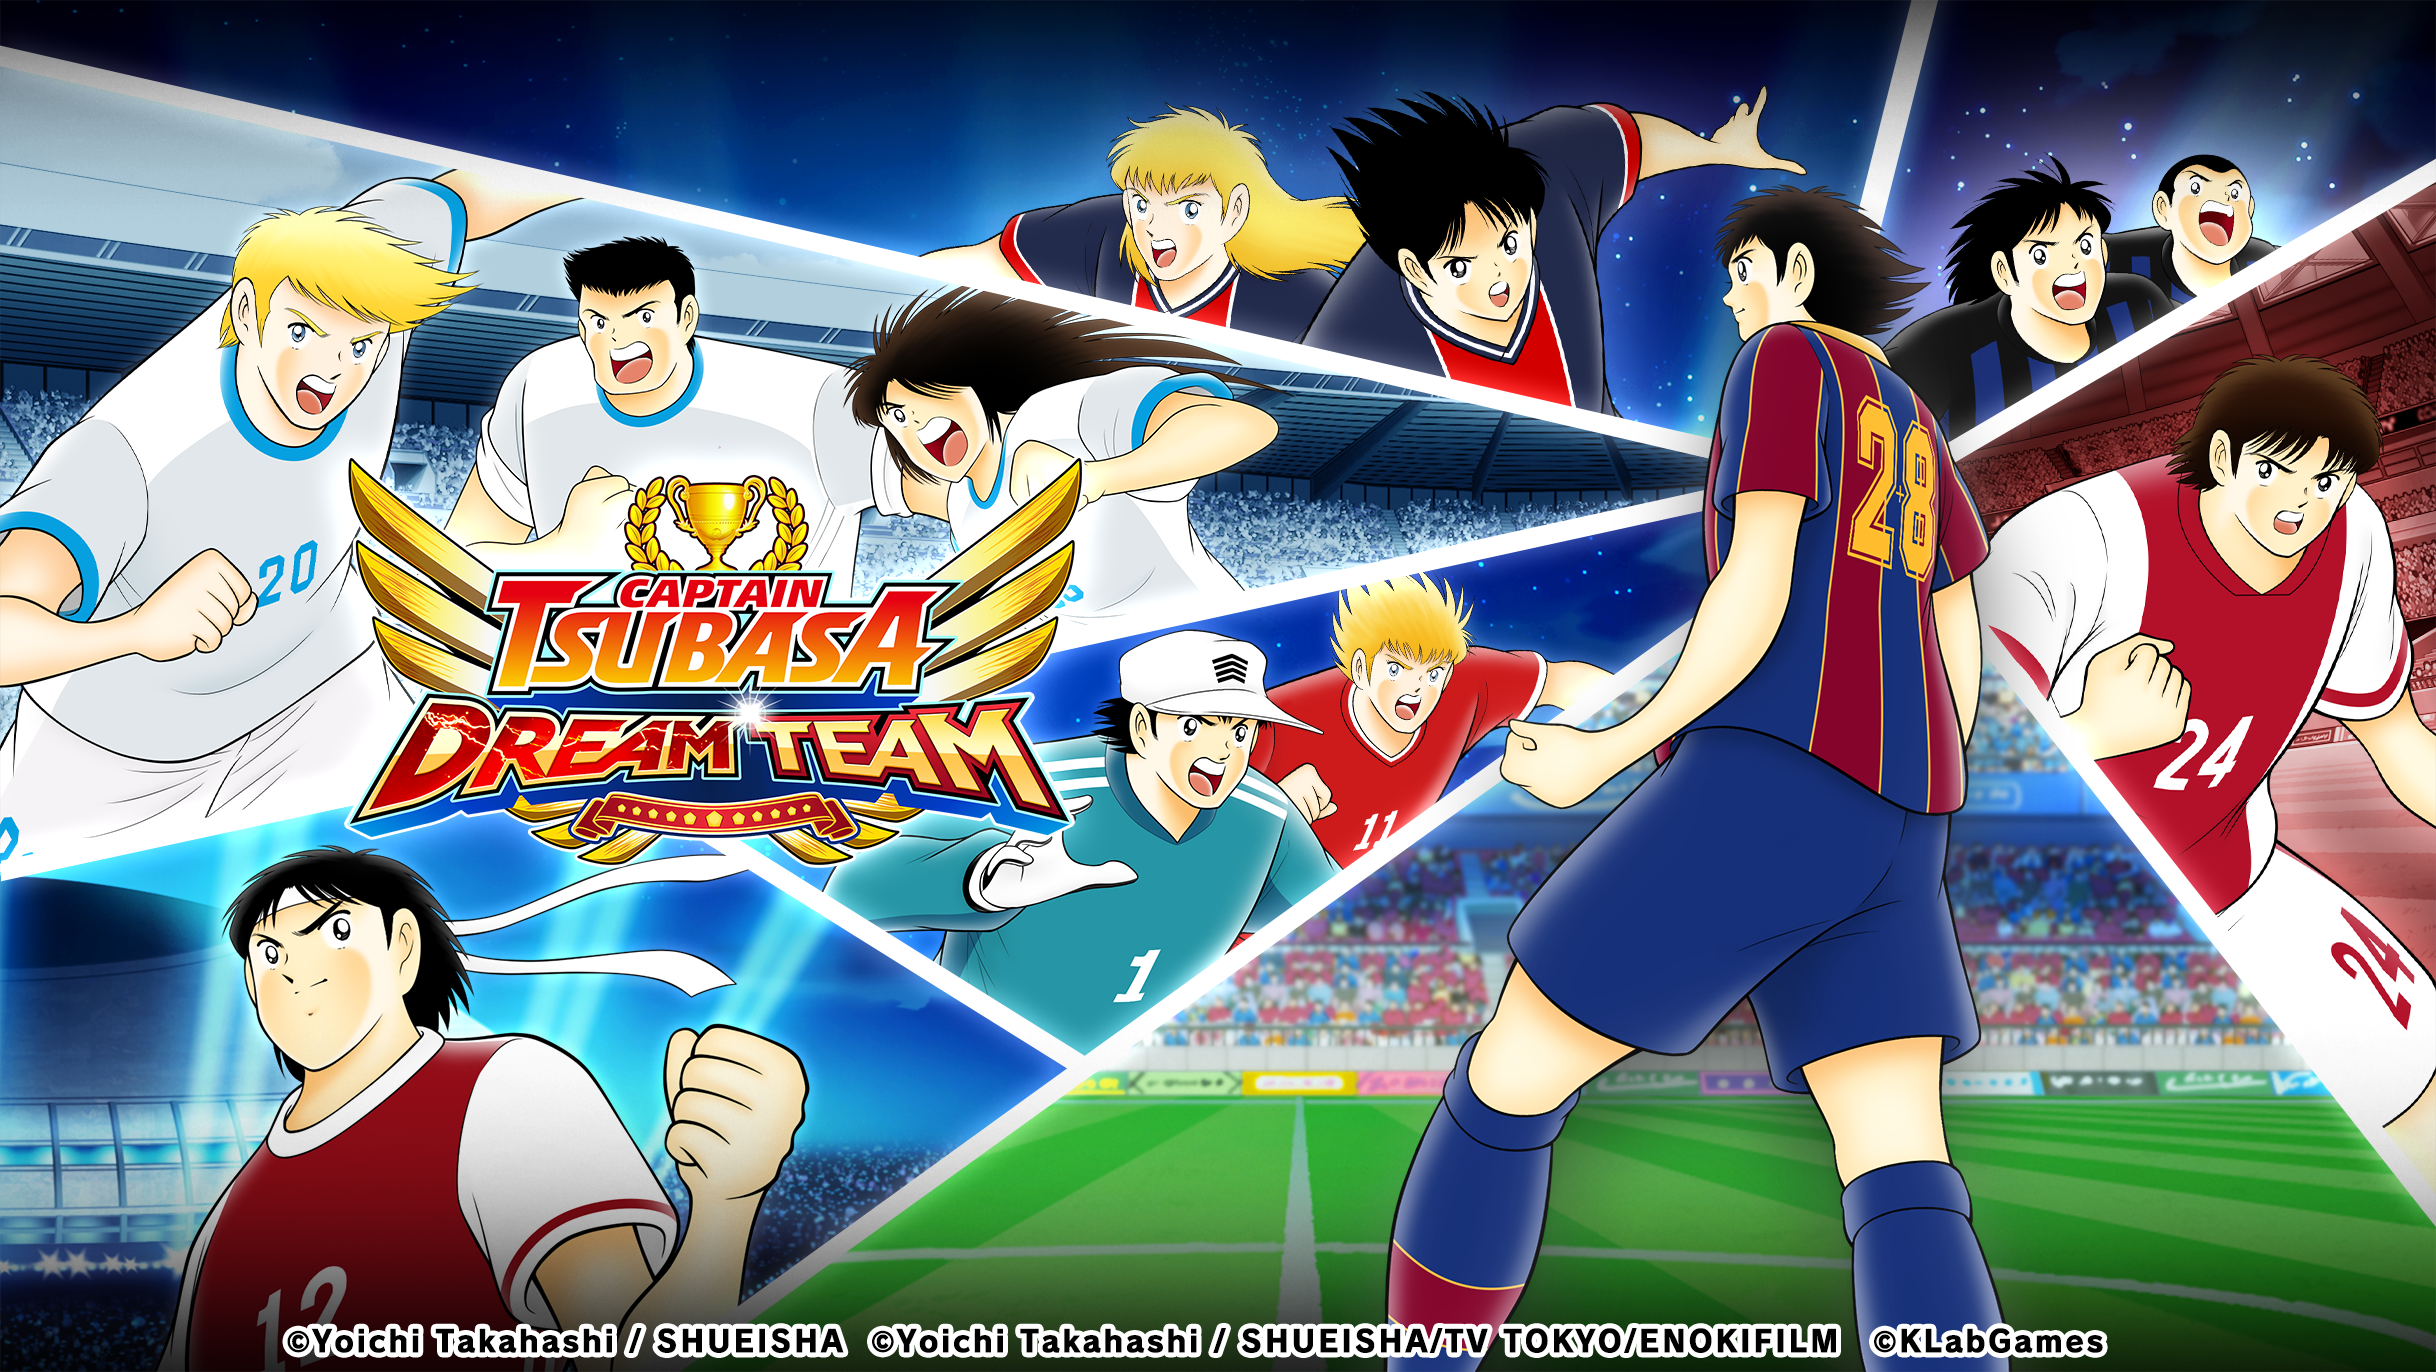 “กัปตันซึบาสะ: ดรีมทีม (Captain Tsubasa: Dream Team)” เปิดตัวระบบการจัดอันดับผู้เล่นแบบใหม่ขึ้น